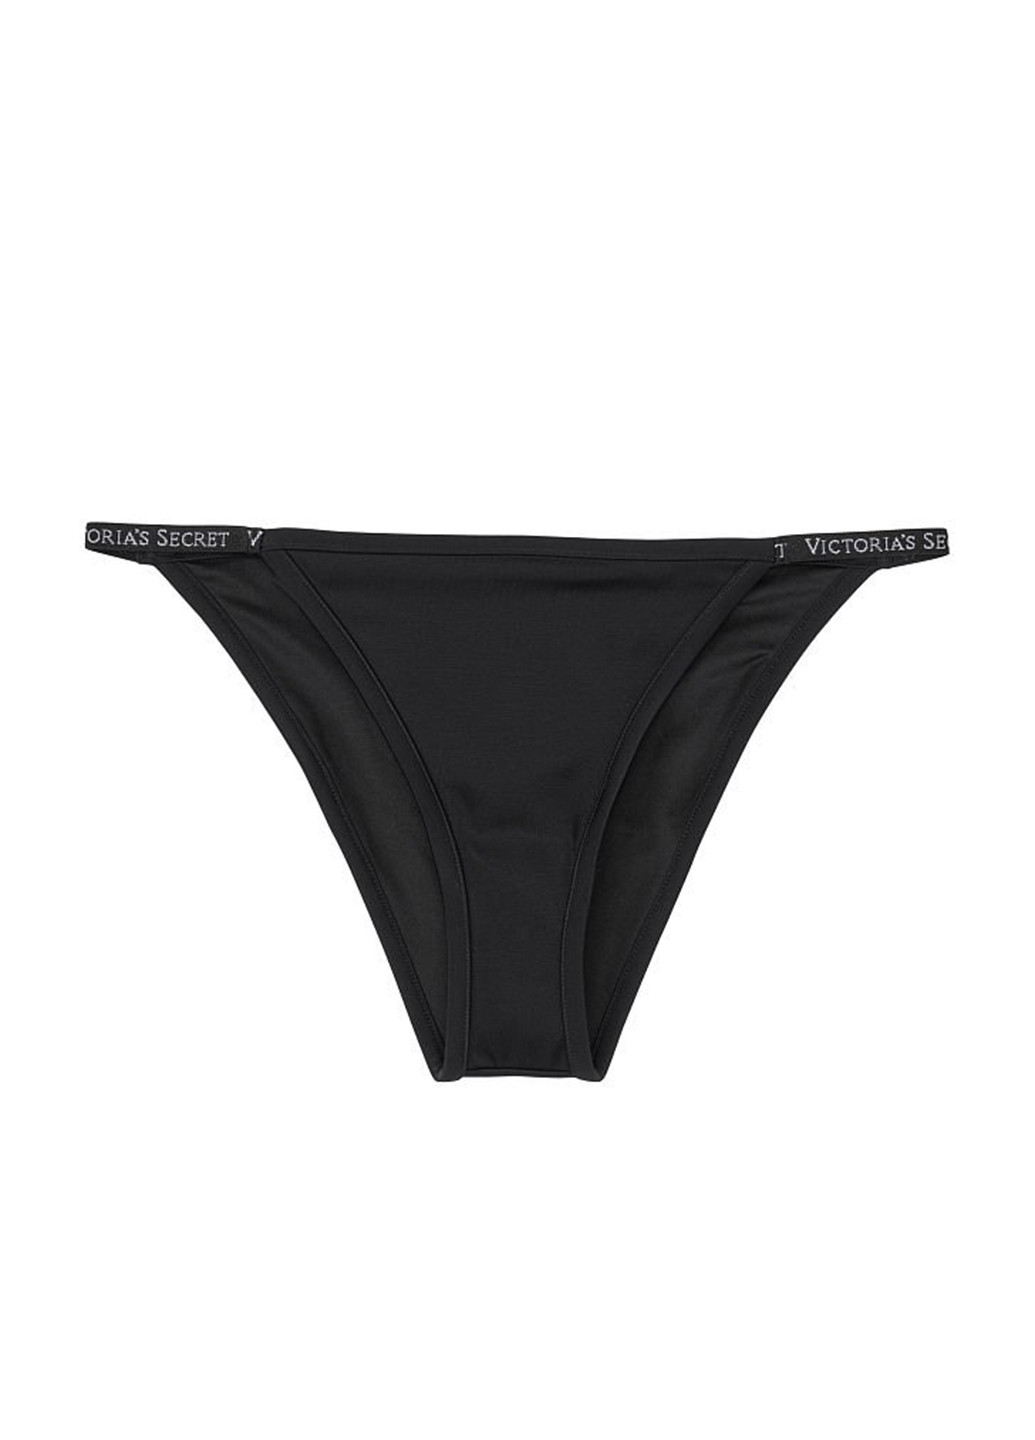 Черный летний купальник (лиф, трусики) раздельный, бандо Victoria's Secret